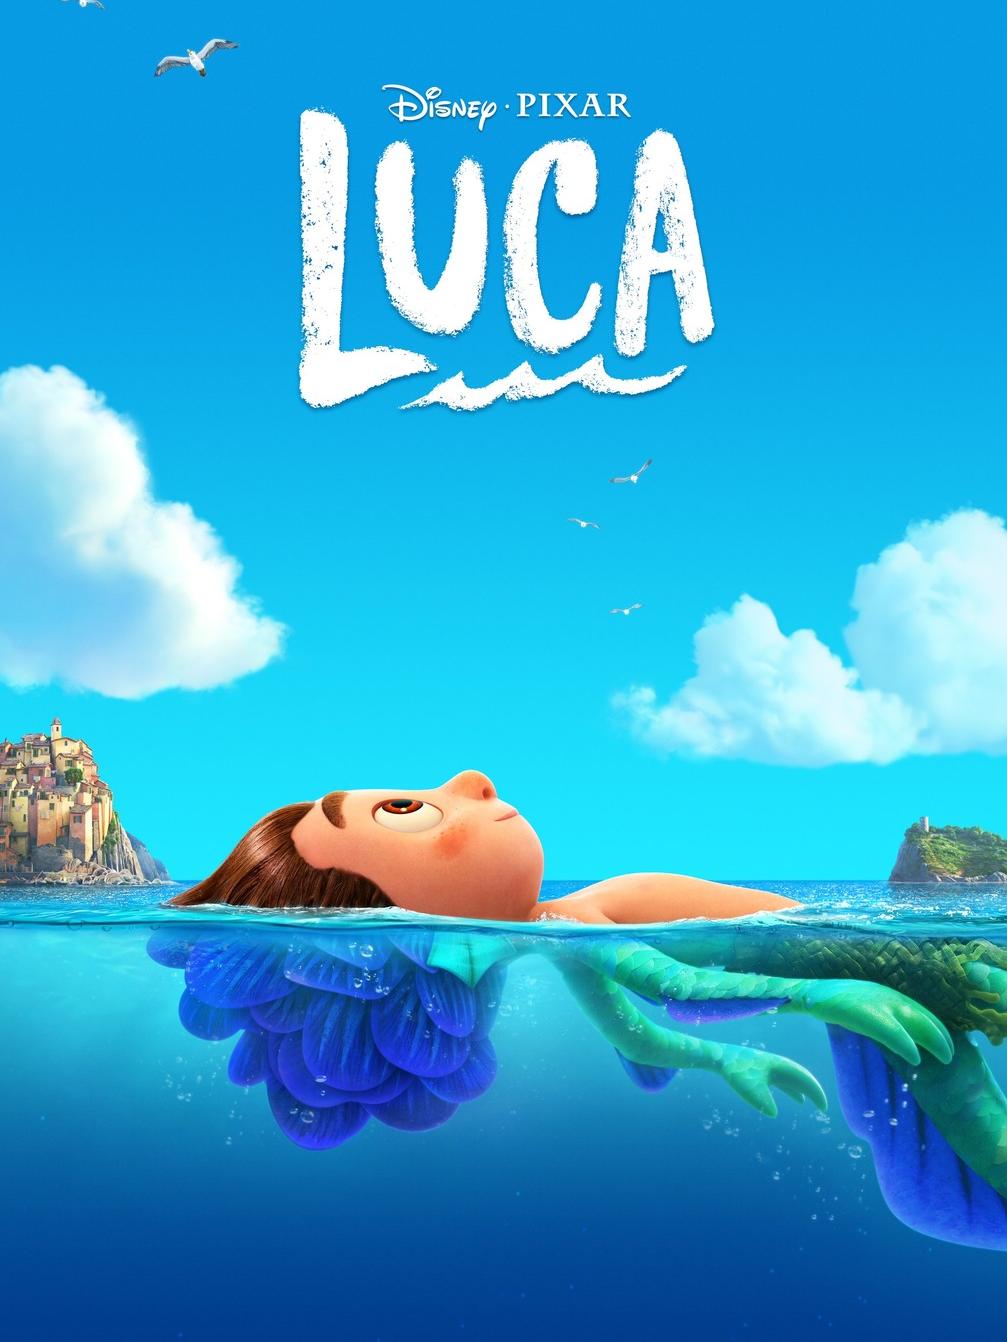 Poster of the Disney Pixar film Luca